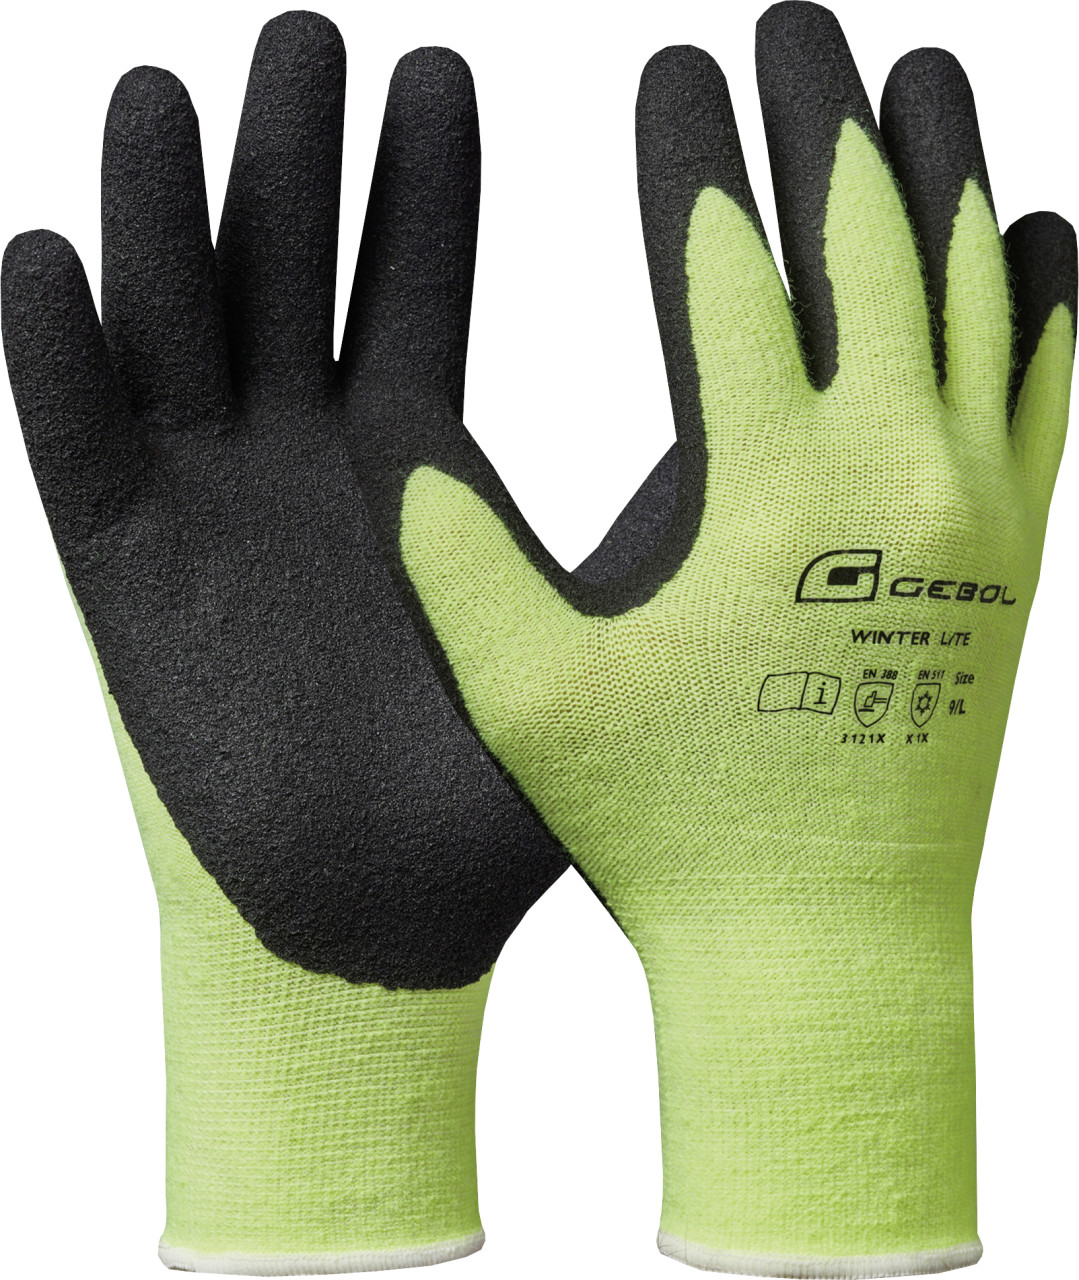 Gebol Handschuh Winter Lite schwarz/neongelb von GEBOL